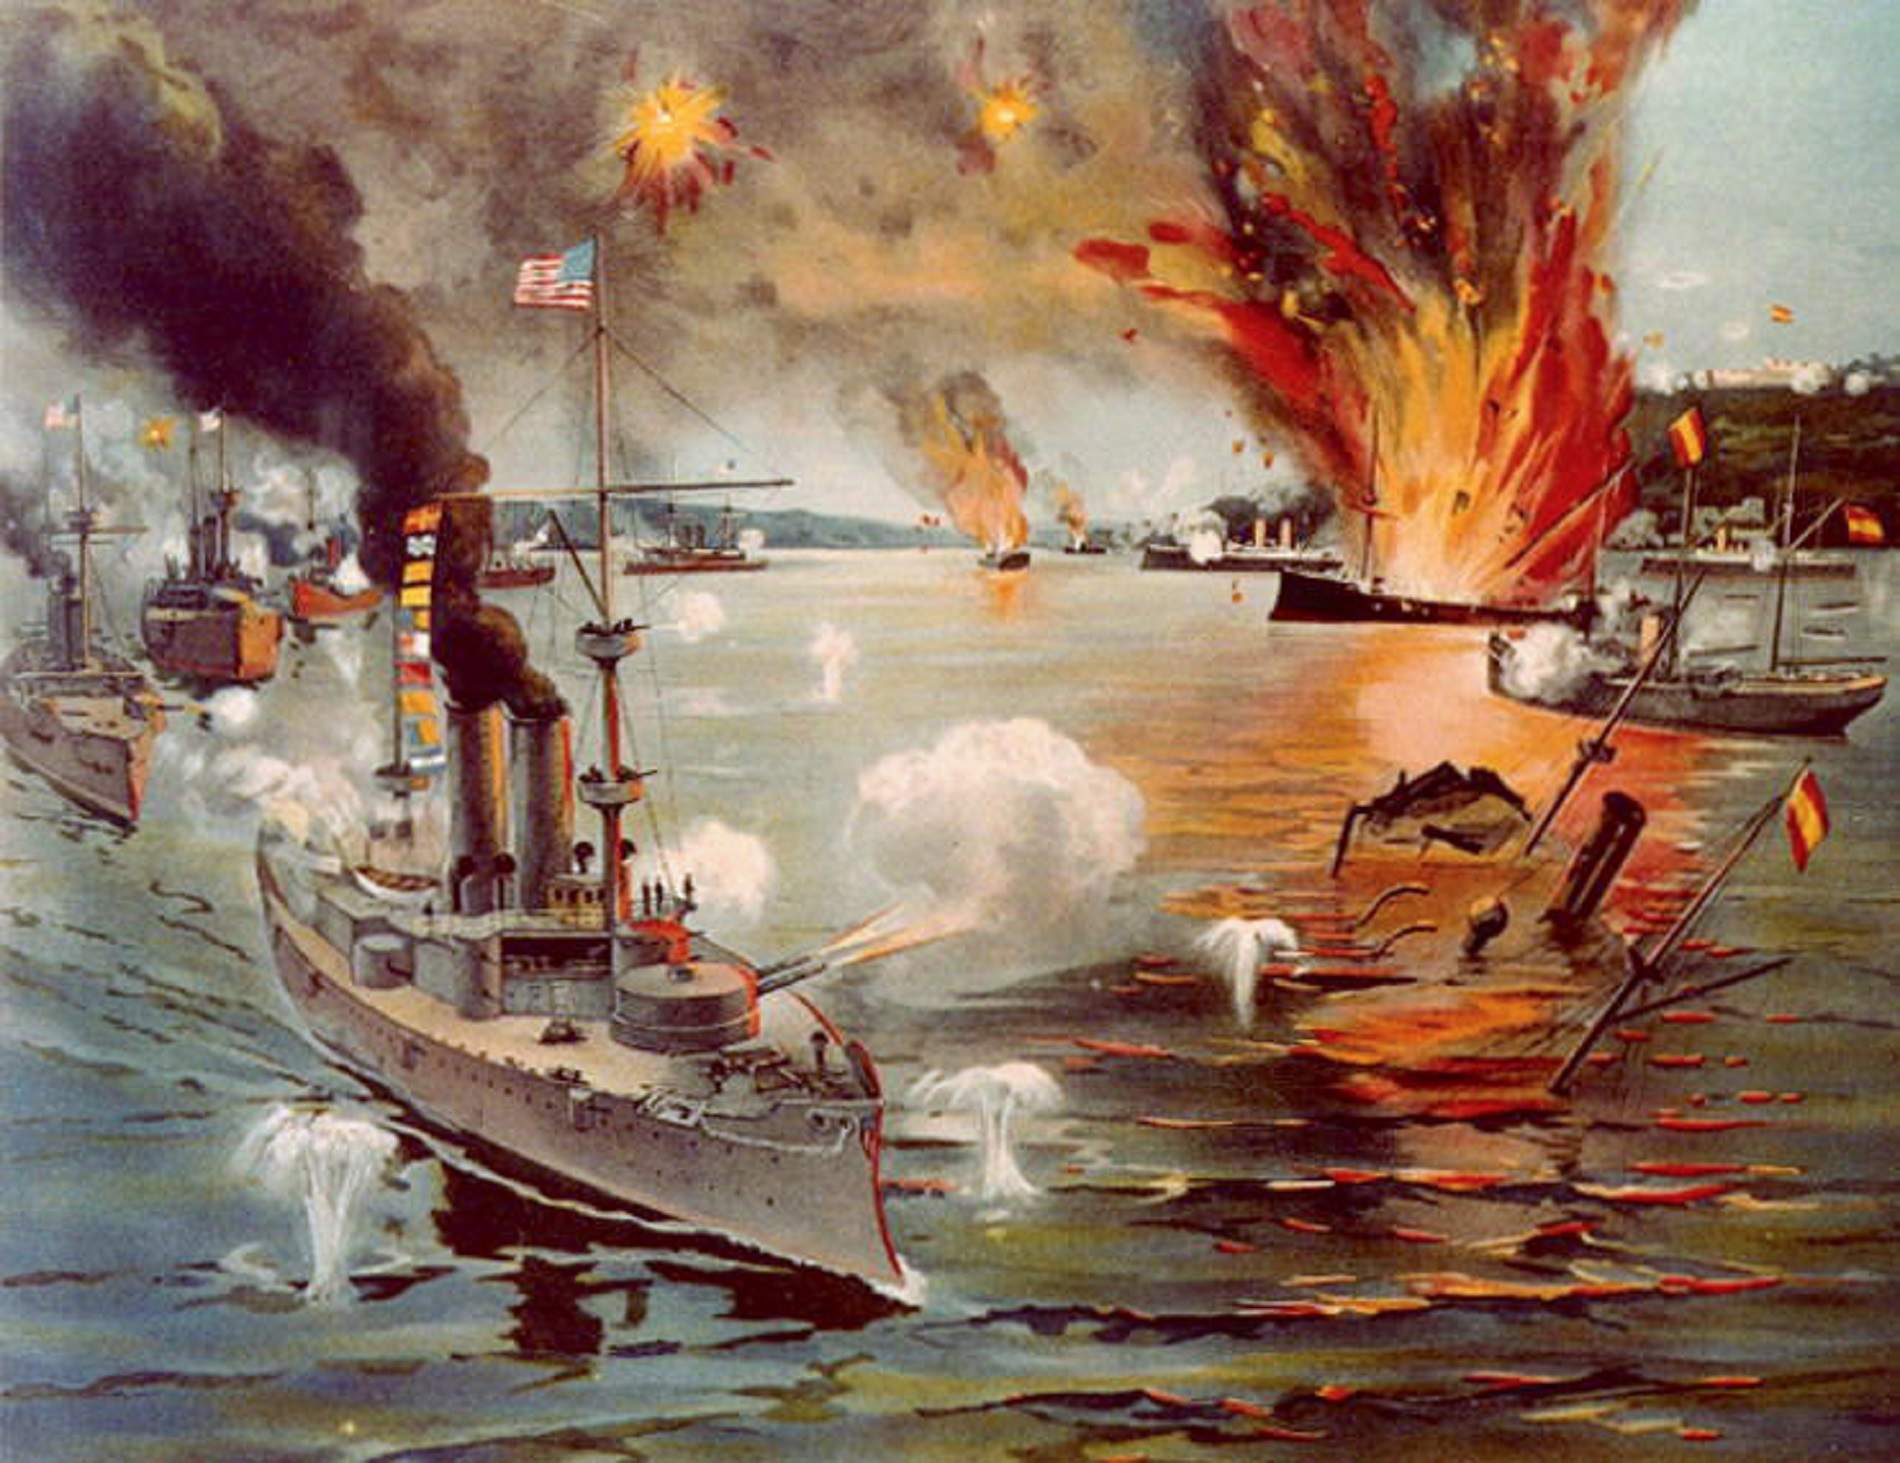 Els americans enfonsen tota la flota espanyola a les Filipines en una sola batalla